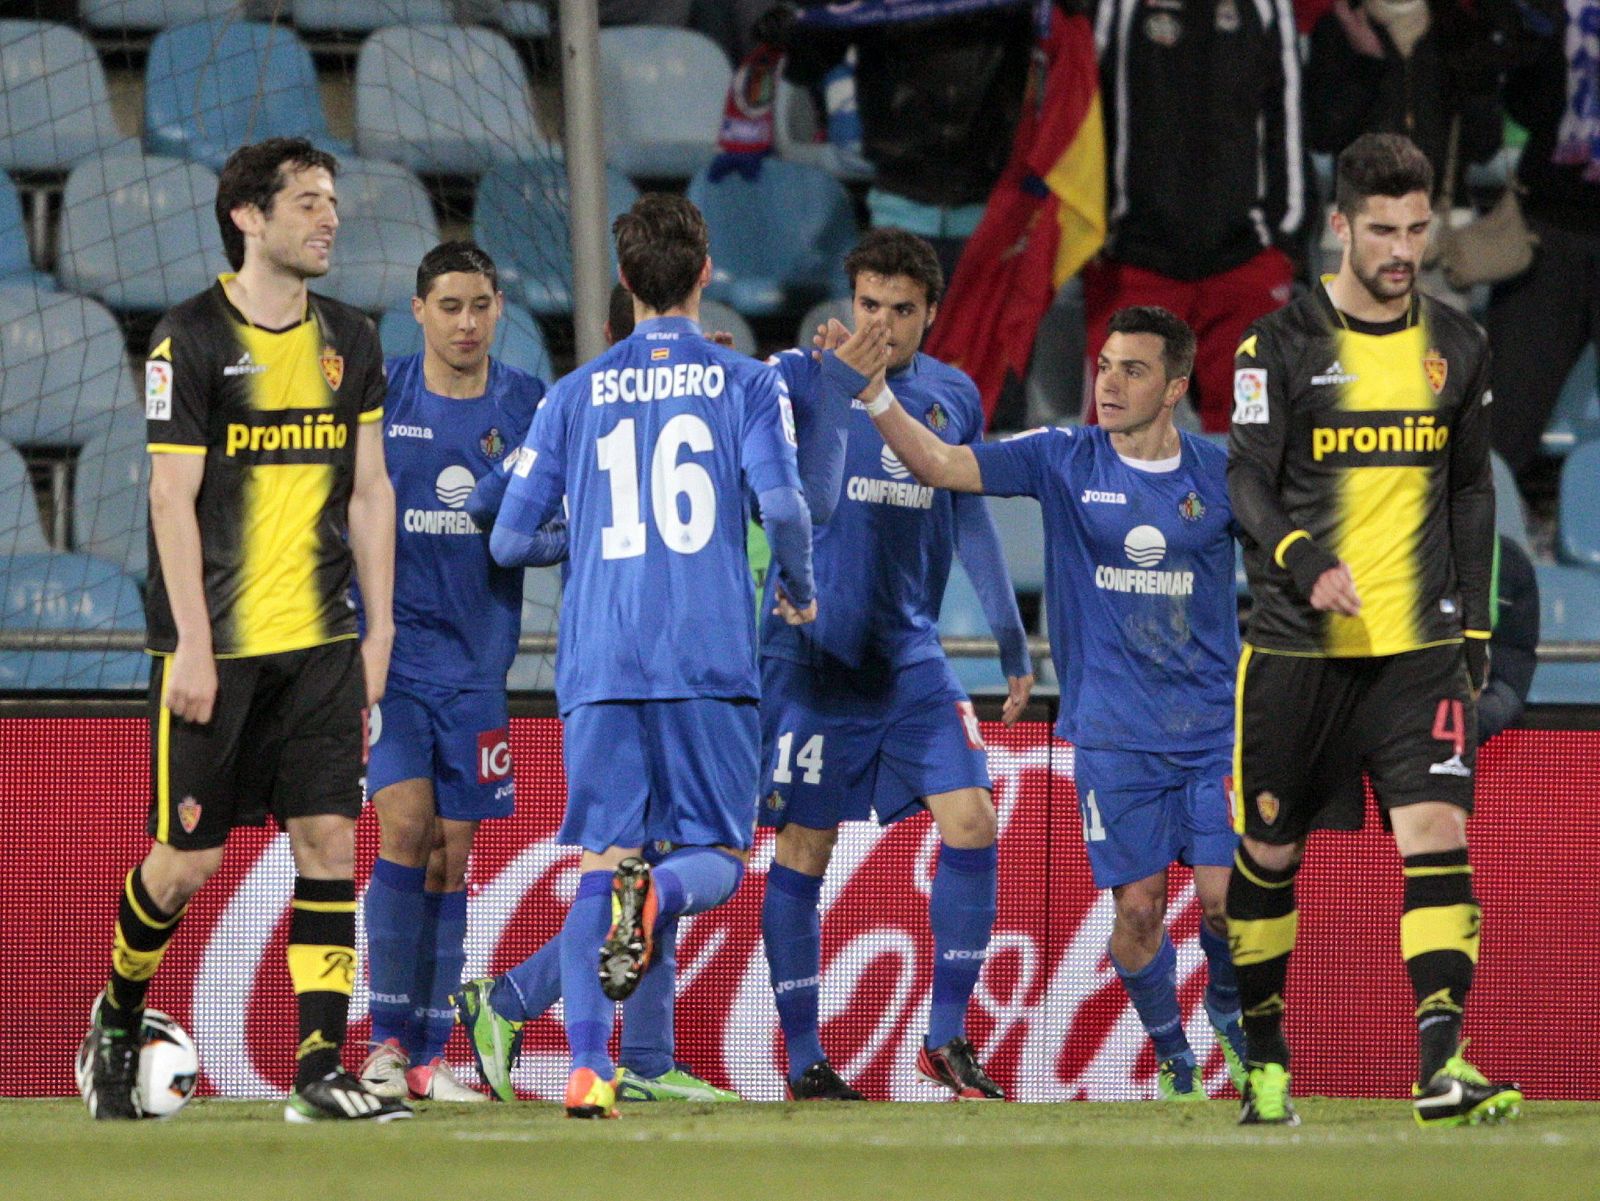 Los jugadores del Getafe celebran el gol marcado por Colunga.